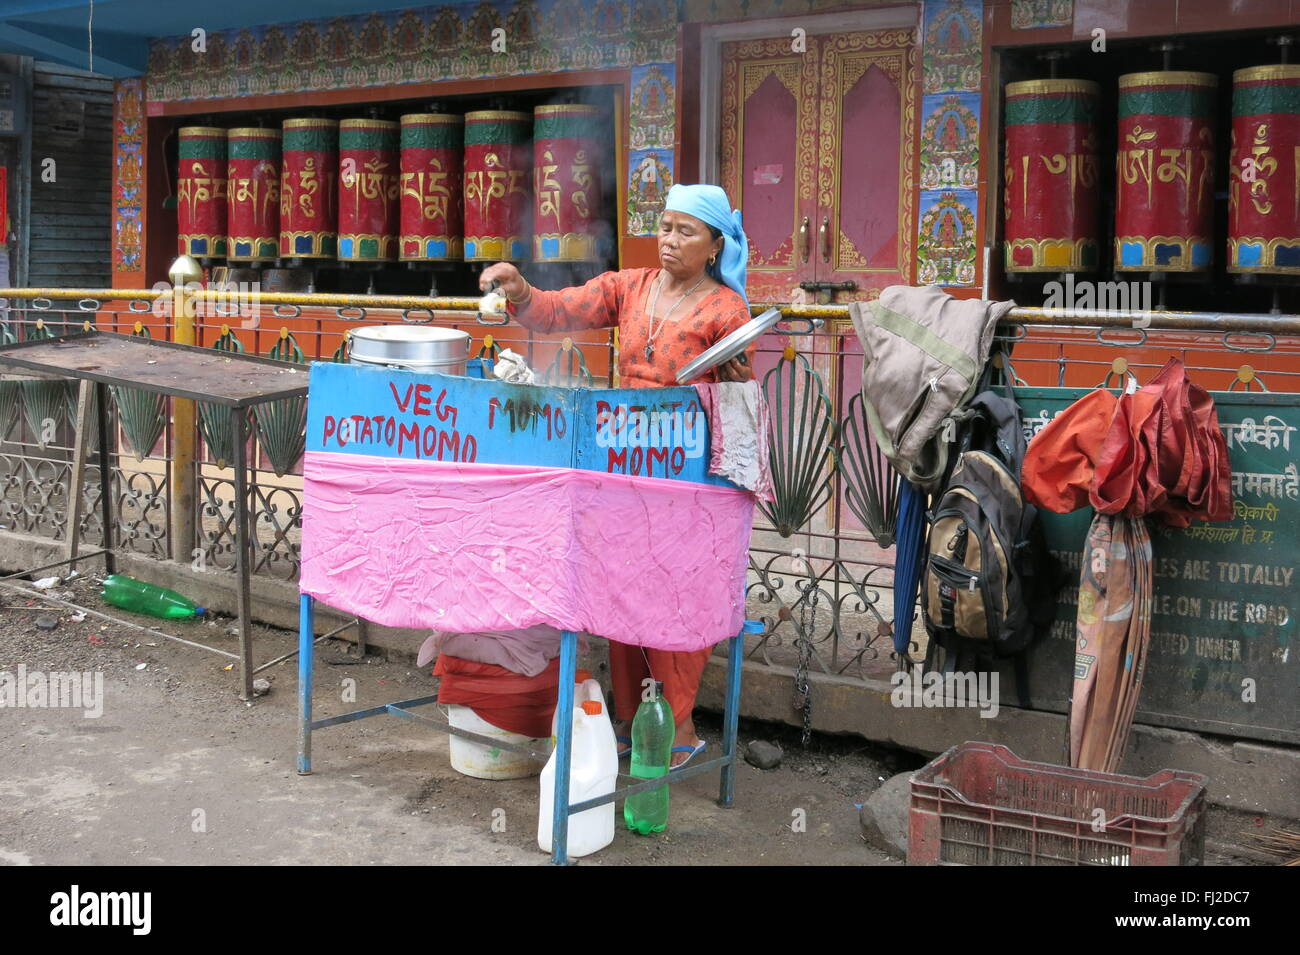 Venditore ambulante vende street cibo vegetale e potato momo in McLeod Ganj (superiore dharamshala) India nella parte anteriore del tempio tibetano Foto Stock